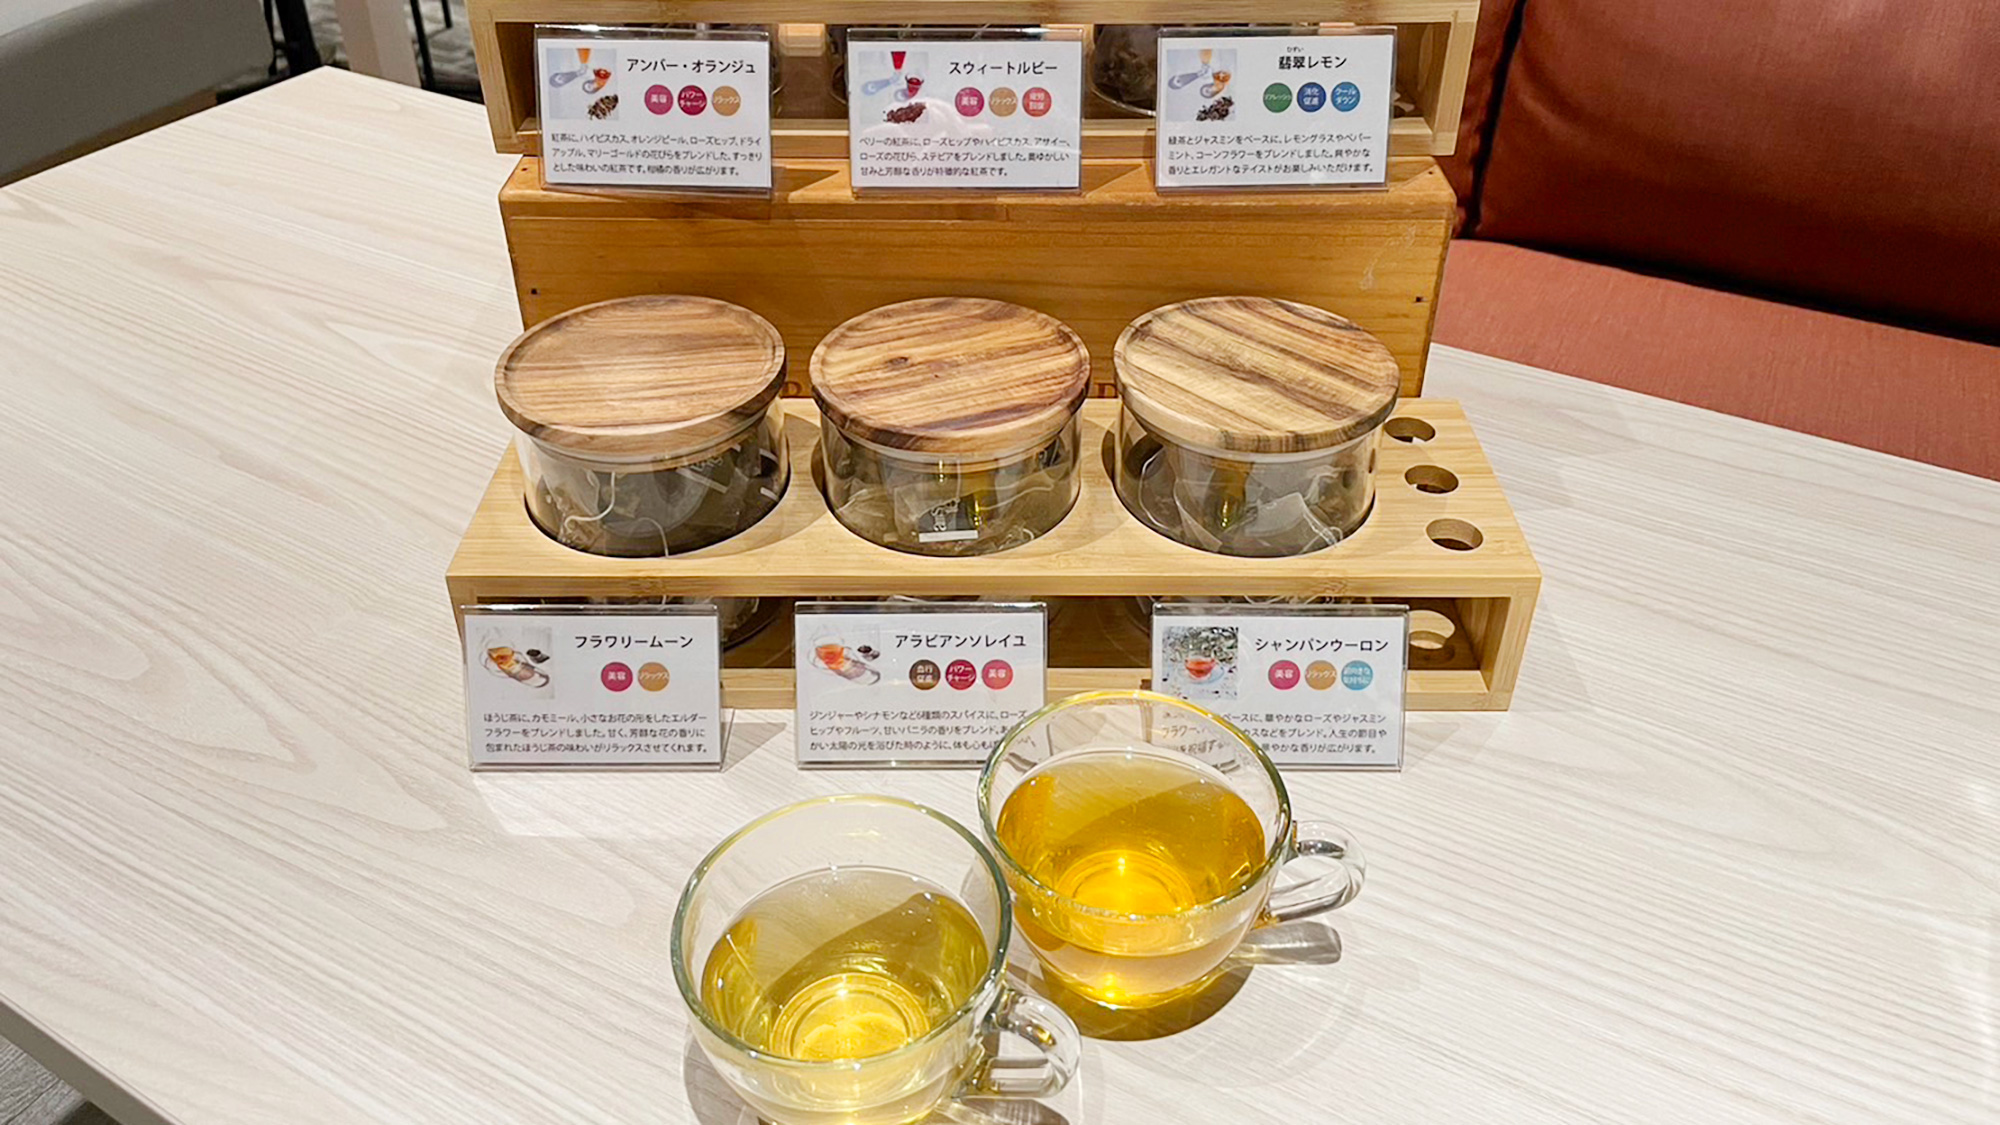 【JEWEL TEA】紅茶や日本茶にハーブをブレンドしたジュエルティー。美容と健康をサポート。